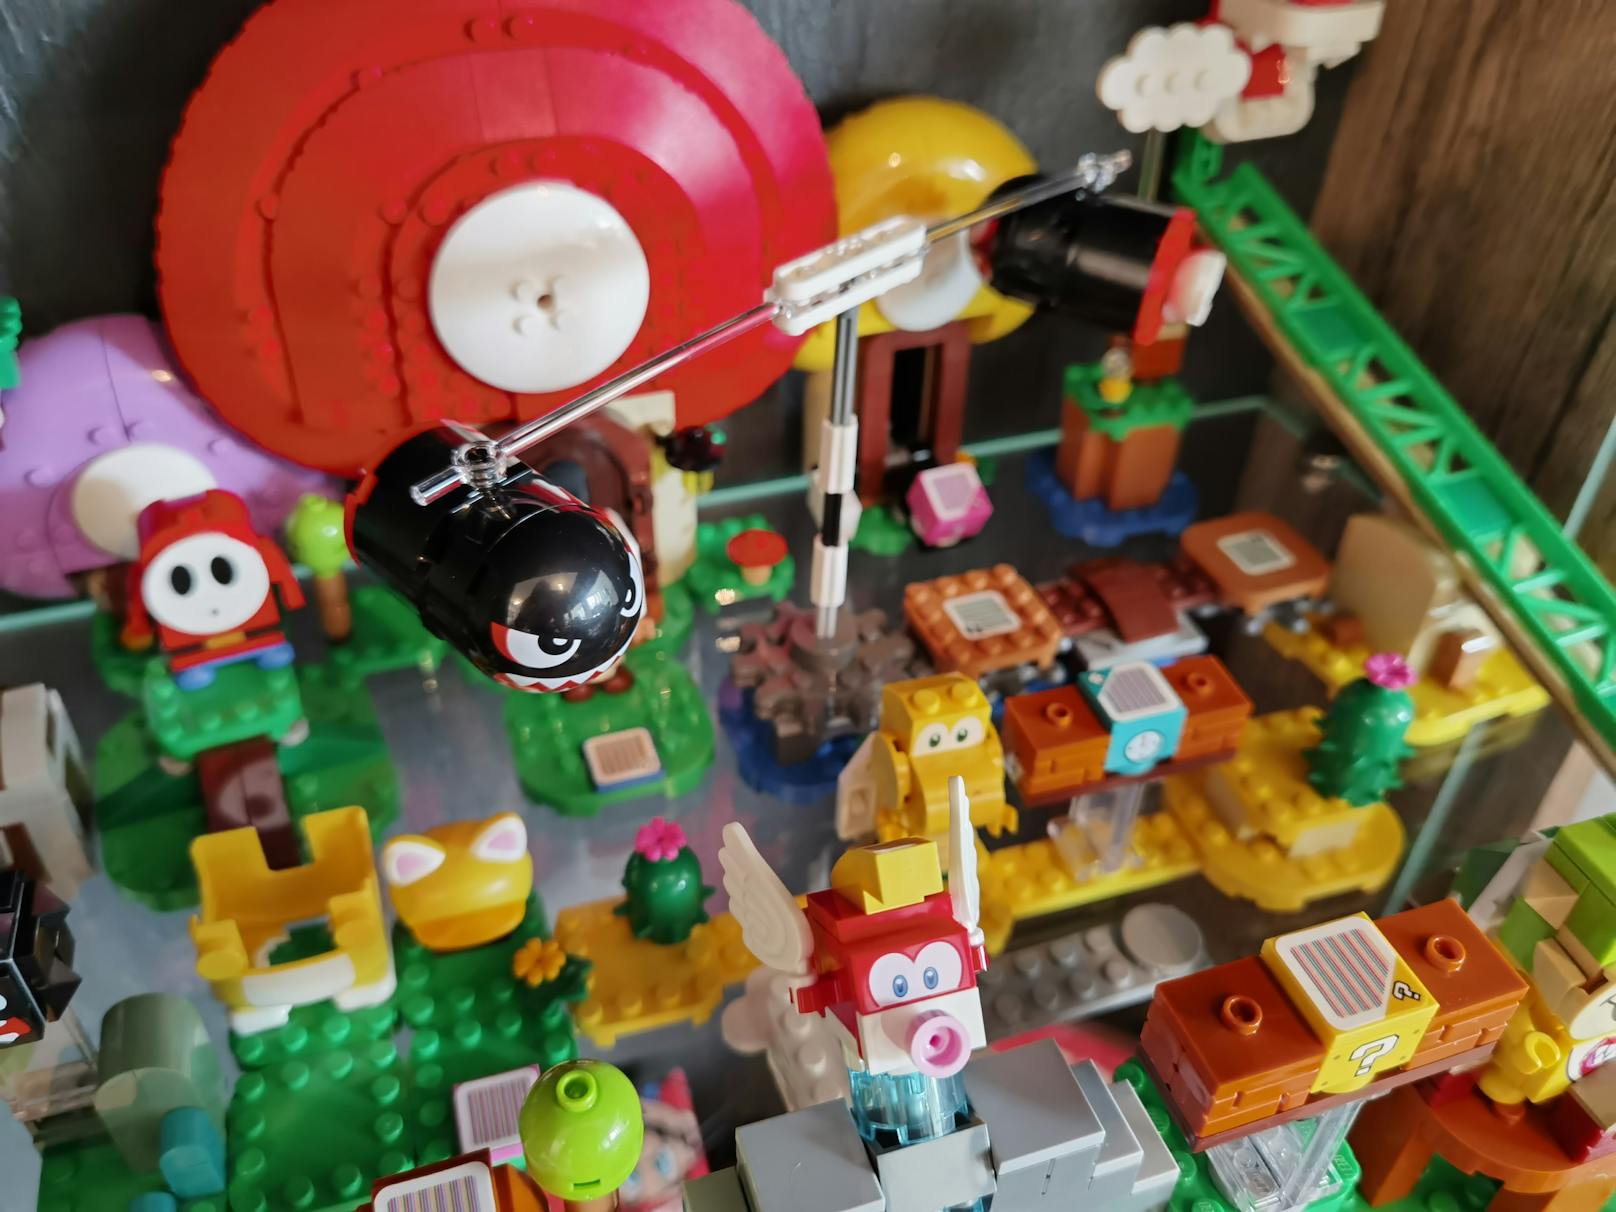 Regeln gibt es beim LEGO-Set nicht viele: Spieler sollen aus den Bausteinen eigene Level nach Belieben bauen und spielen und dabei entweder jedes Set als eigenes Level verwenden - oder sie bunt miteinander mixen.